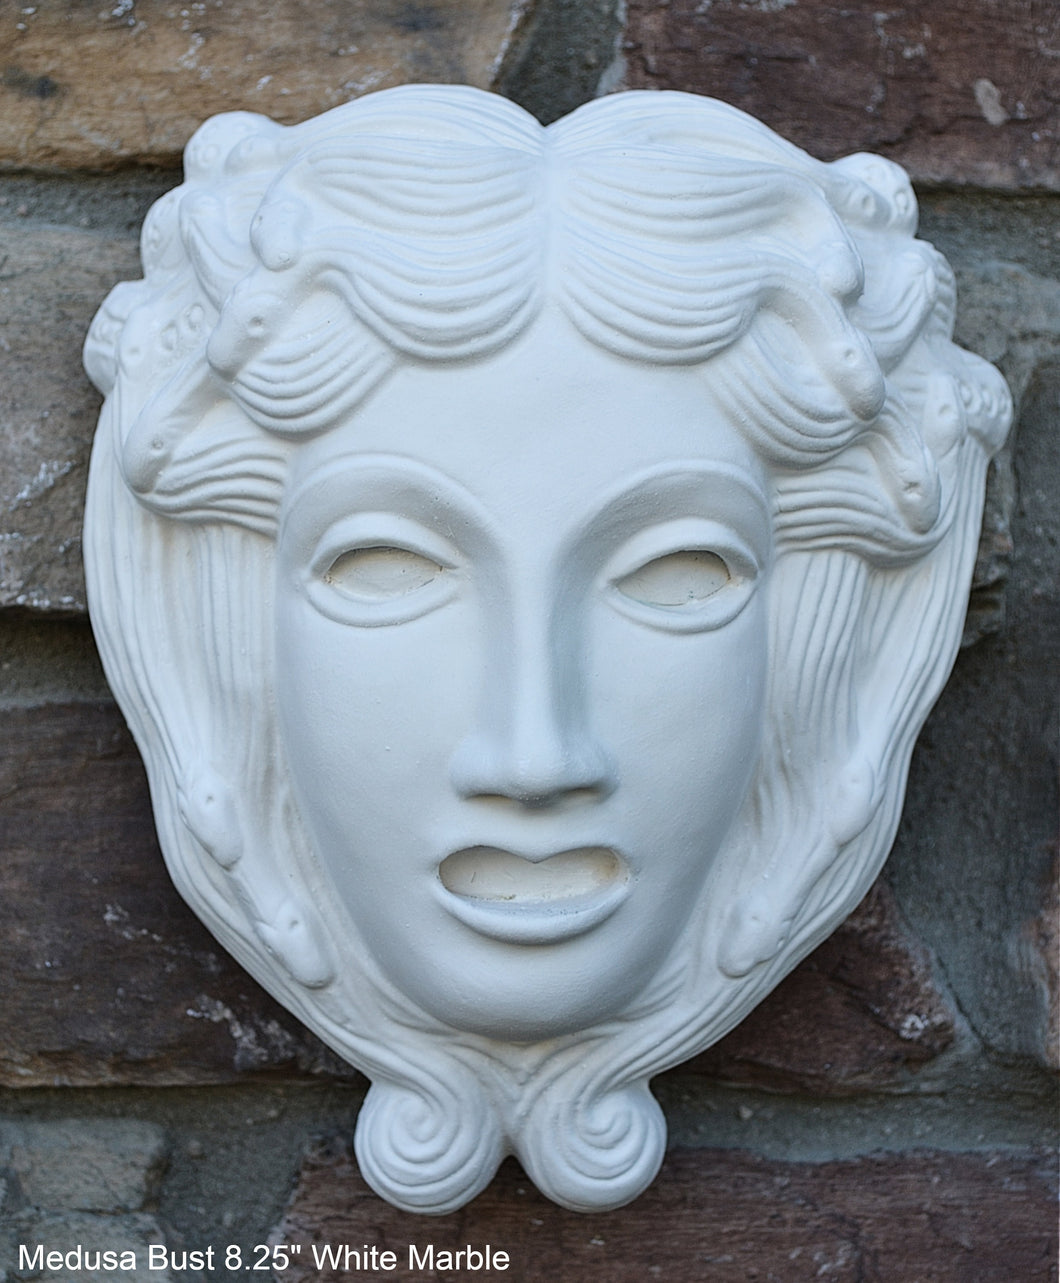 Roman Greek Medusa bust Sculptural wall relief plaque www.Neo-Mfg.com 8.25